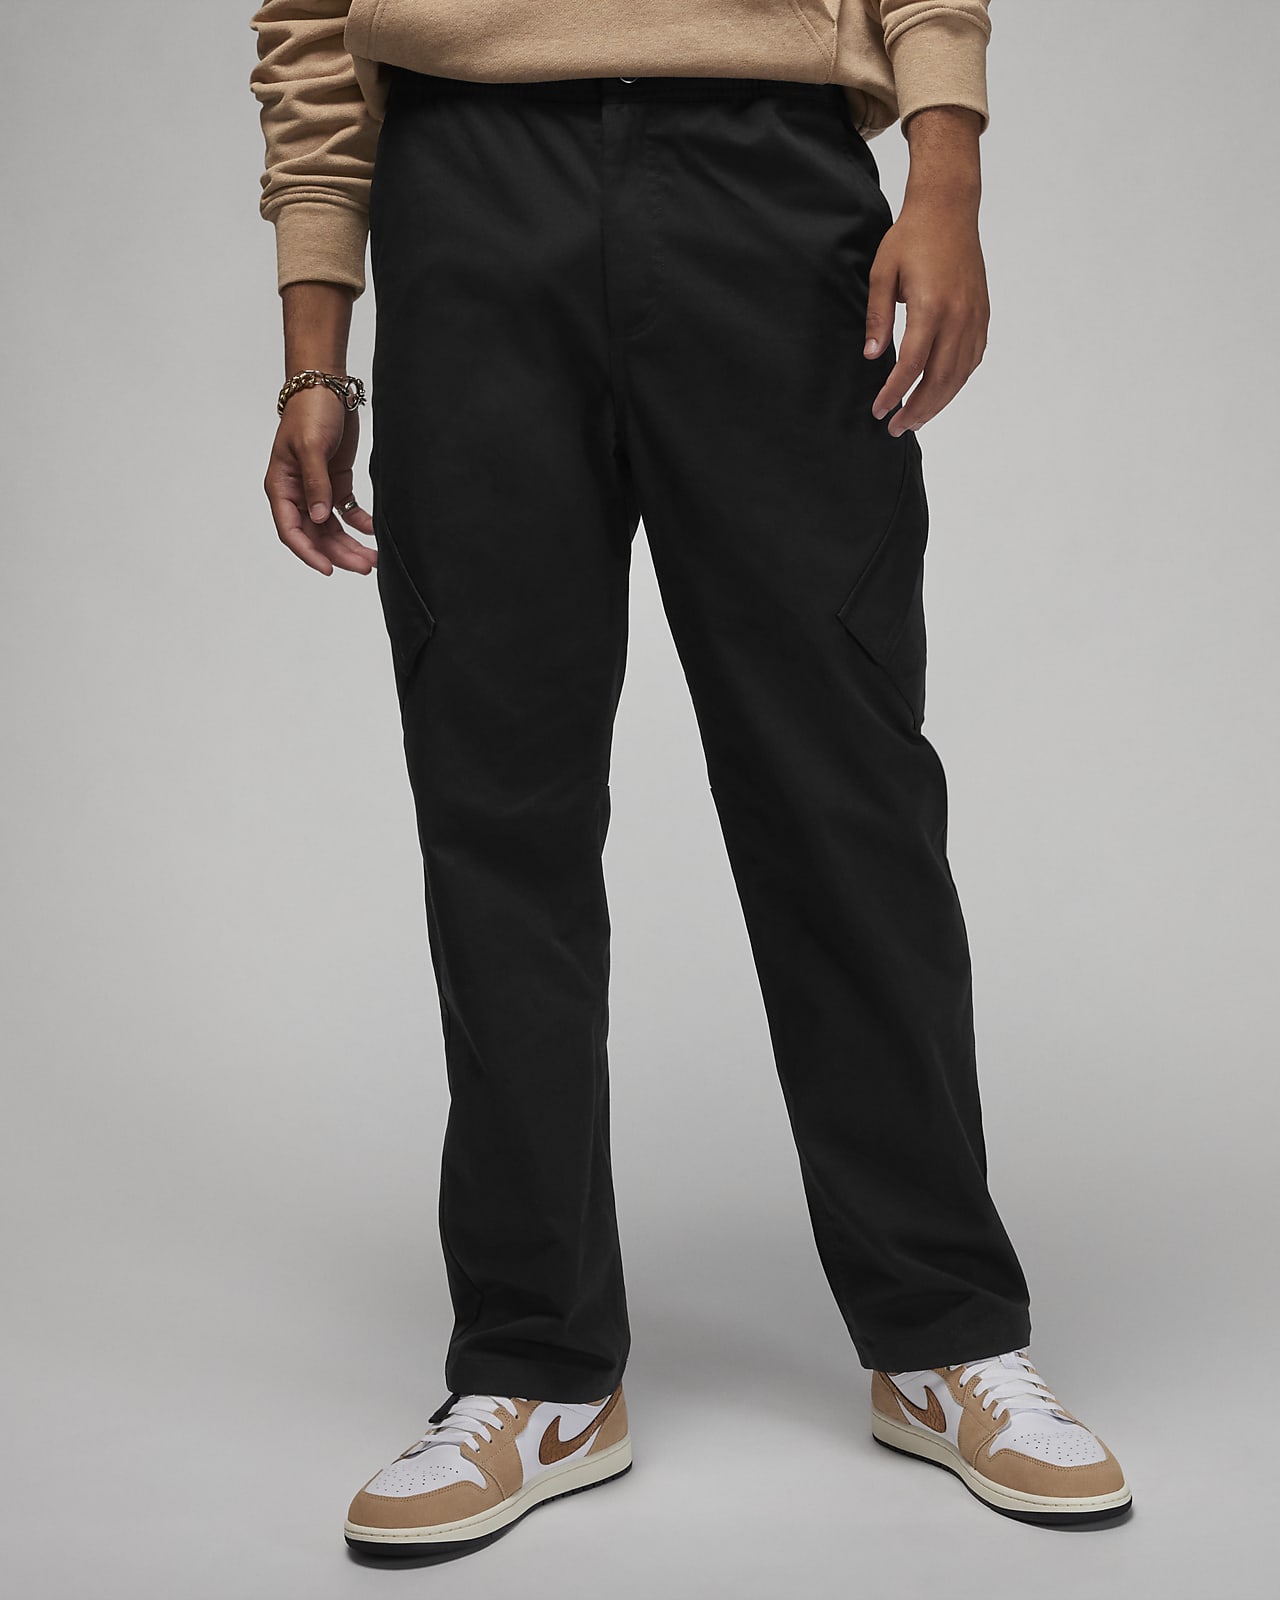 Pantaloni Jordan Essentials Chicago – Uomo